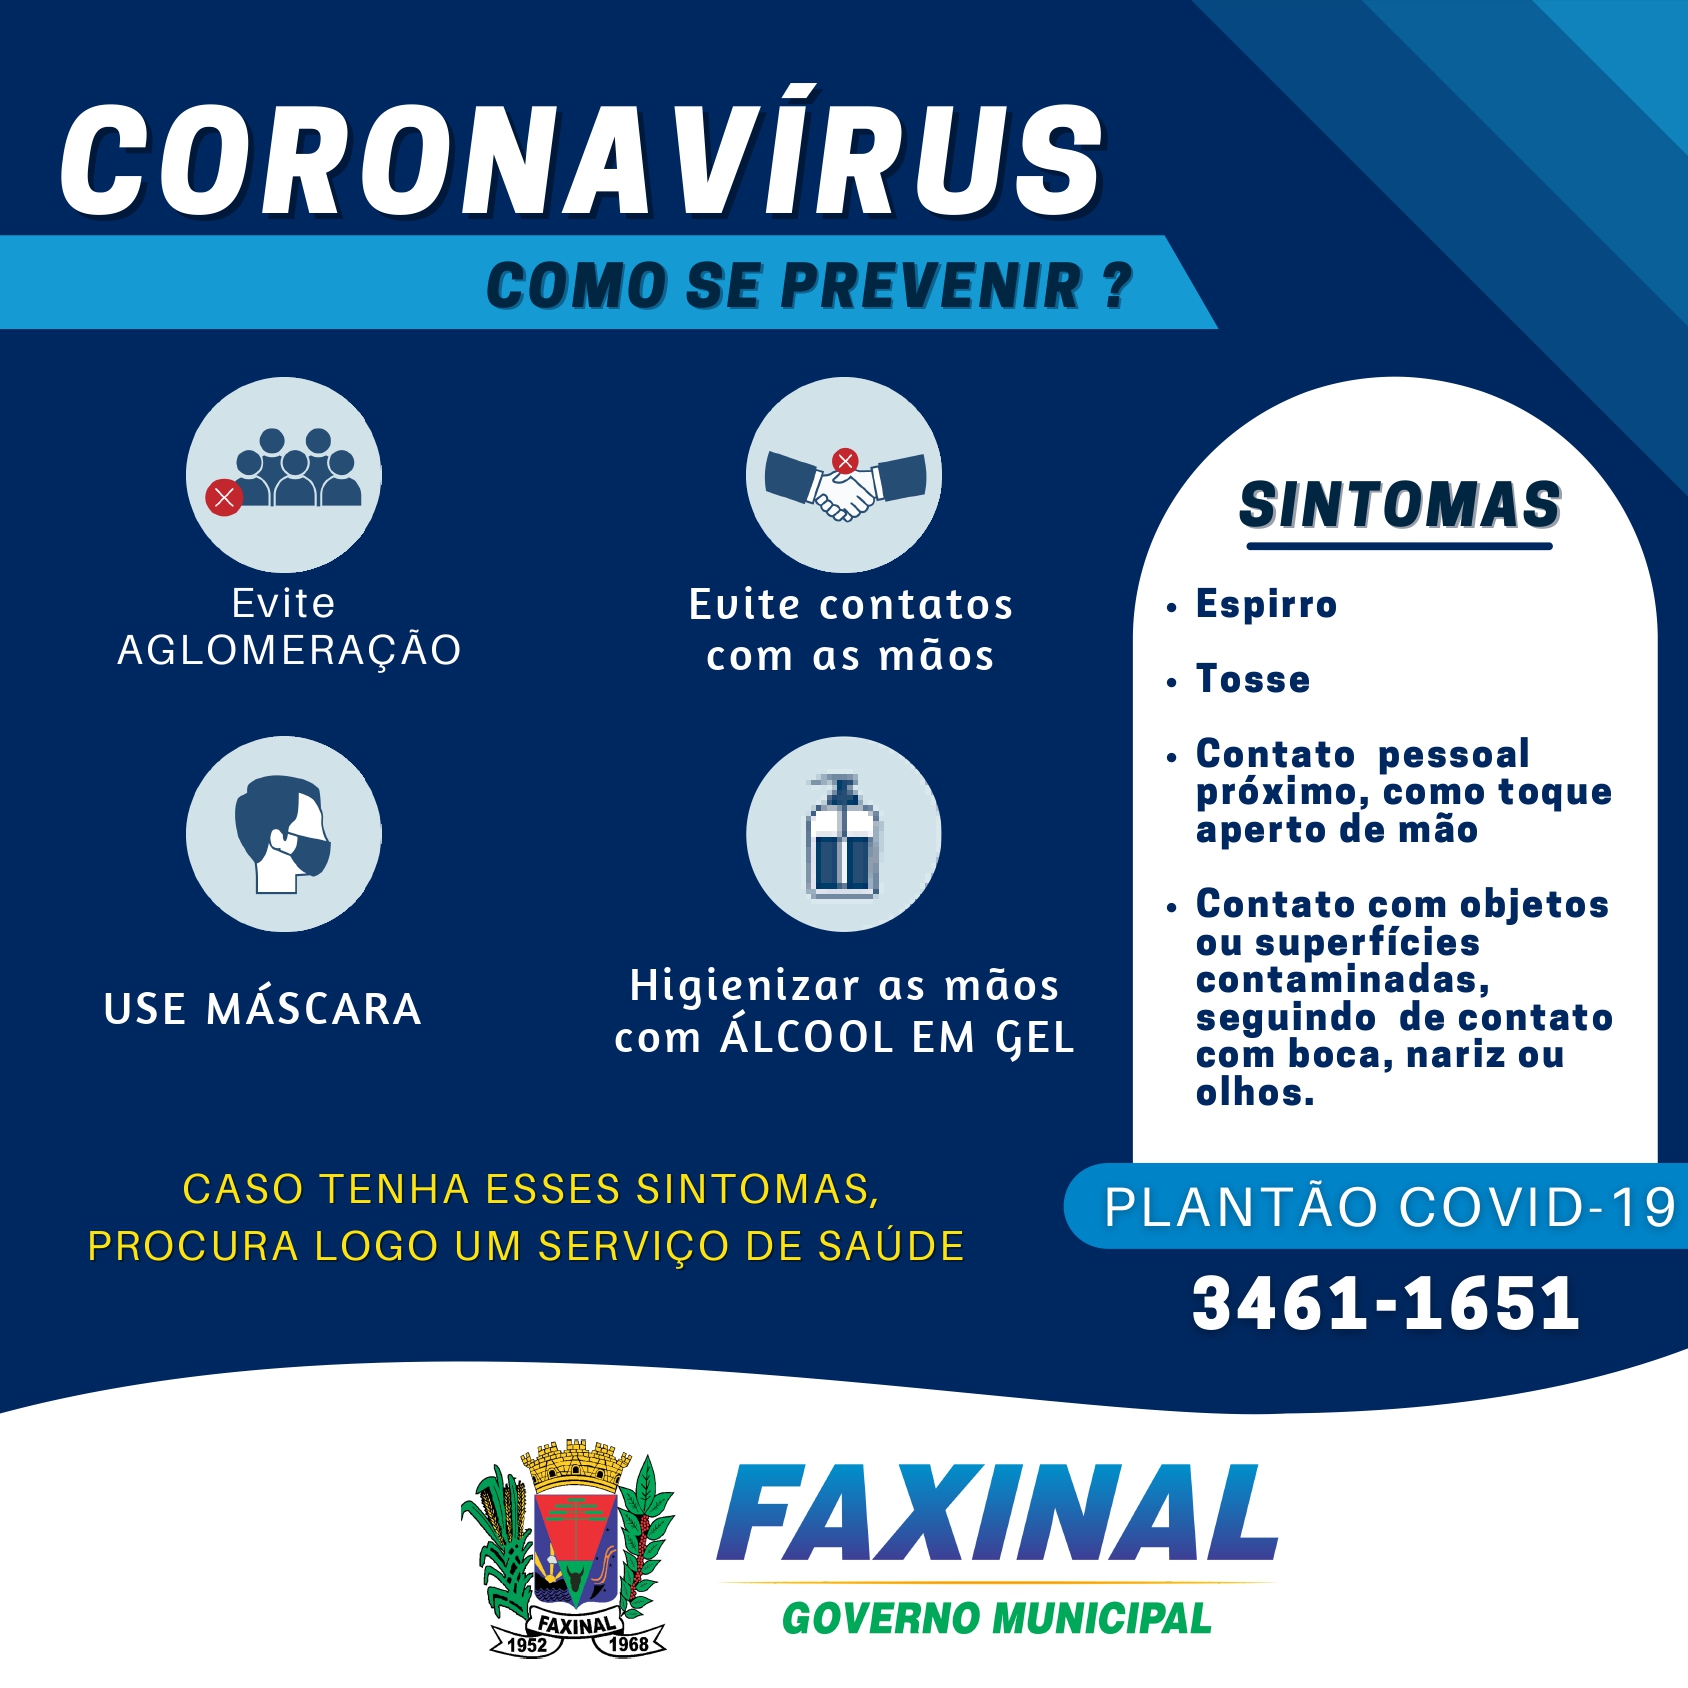 FAXINAL - Como se prevenir do coronavírus?